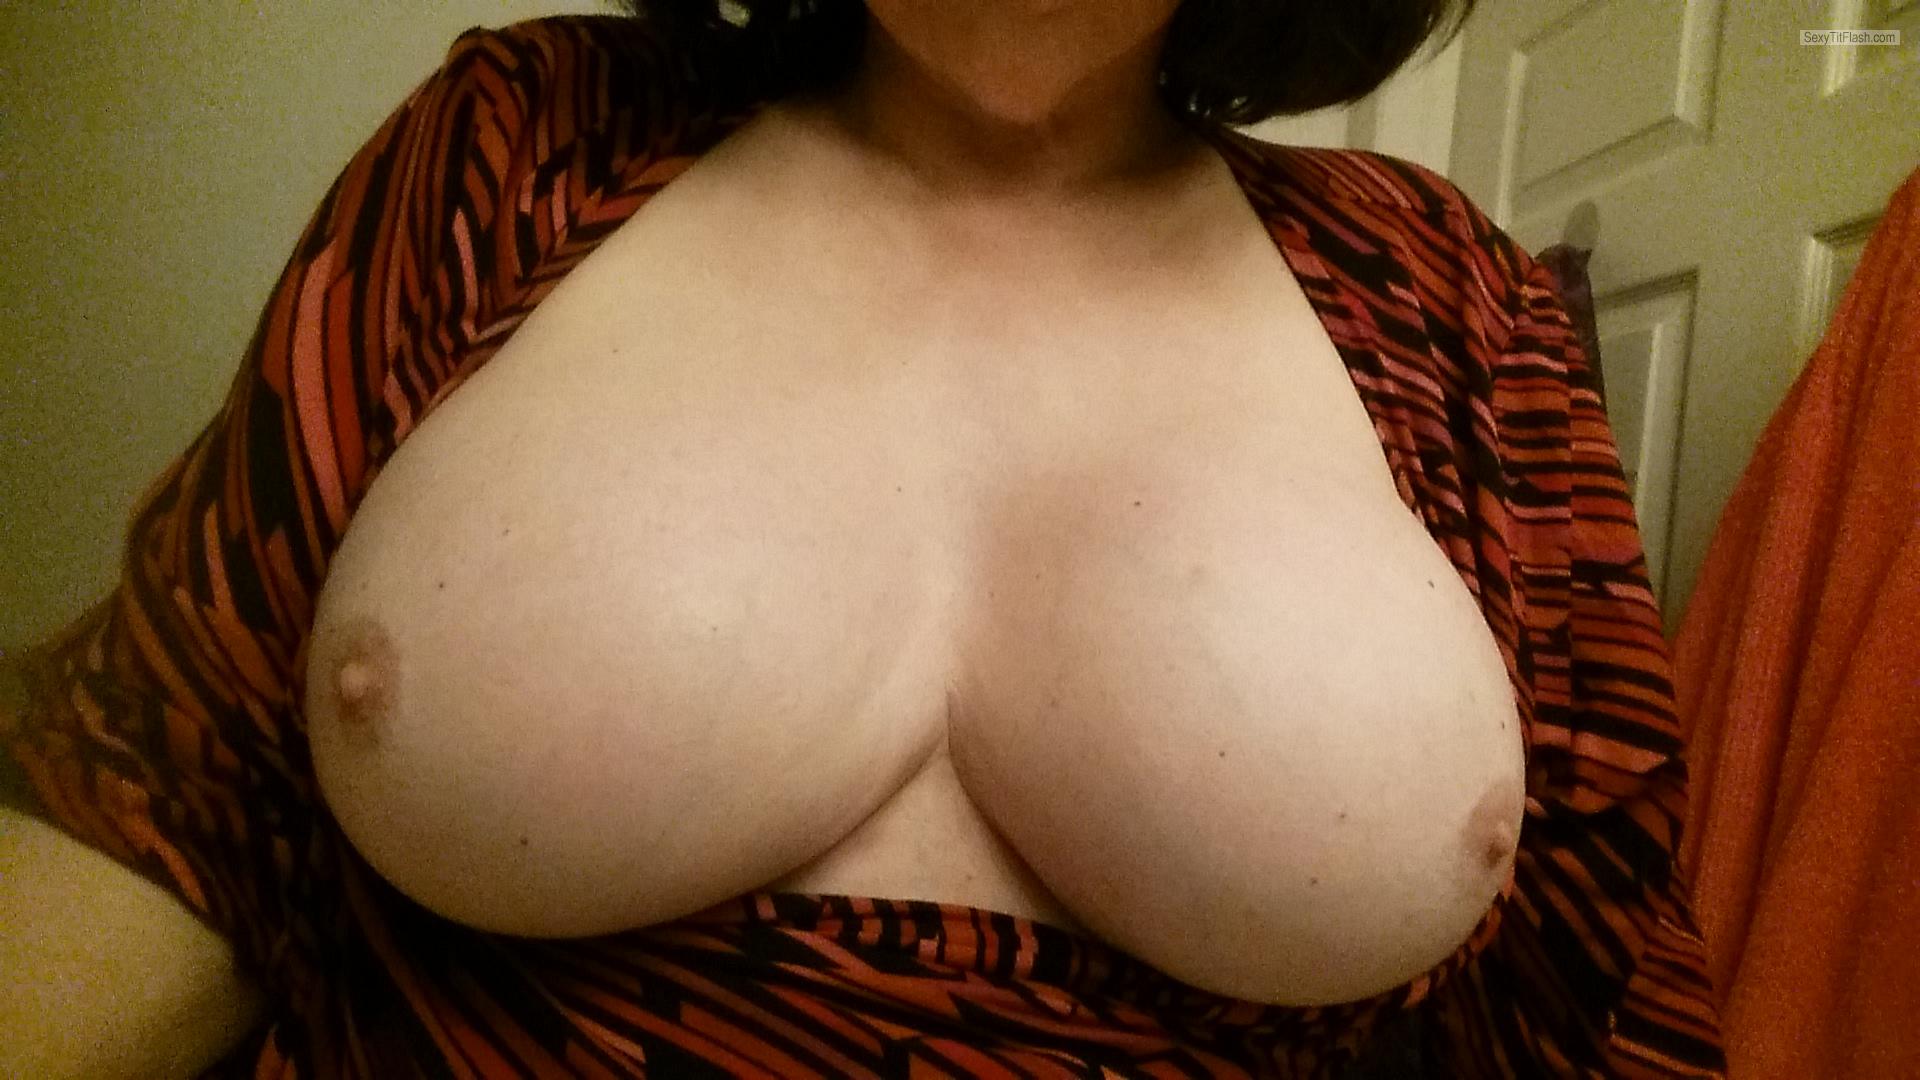 My Big Tits Selfie by Sammi